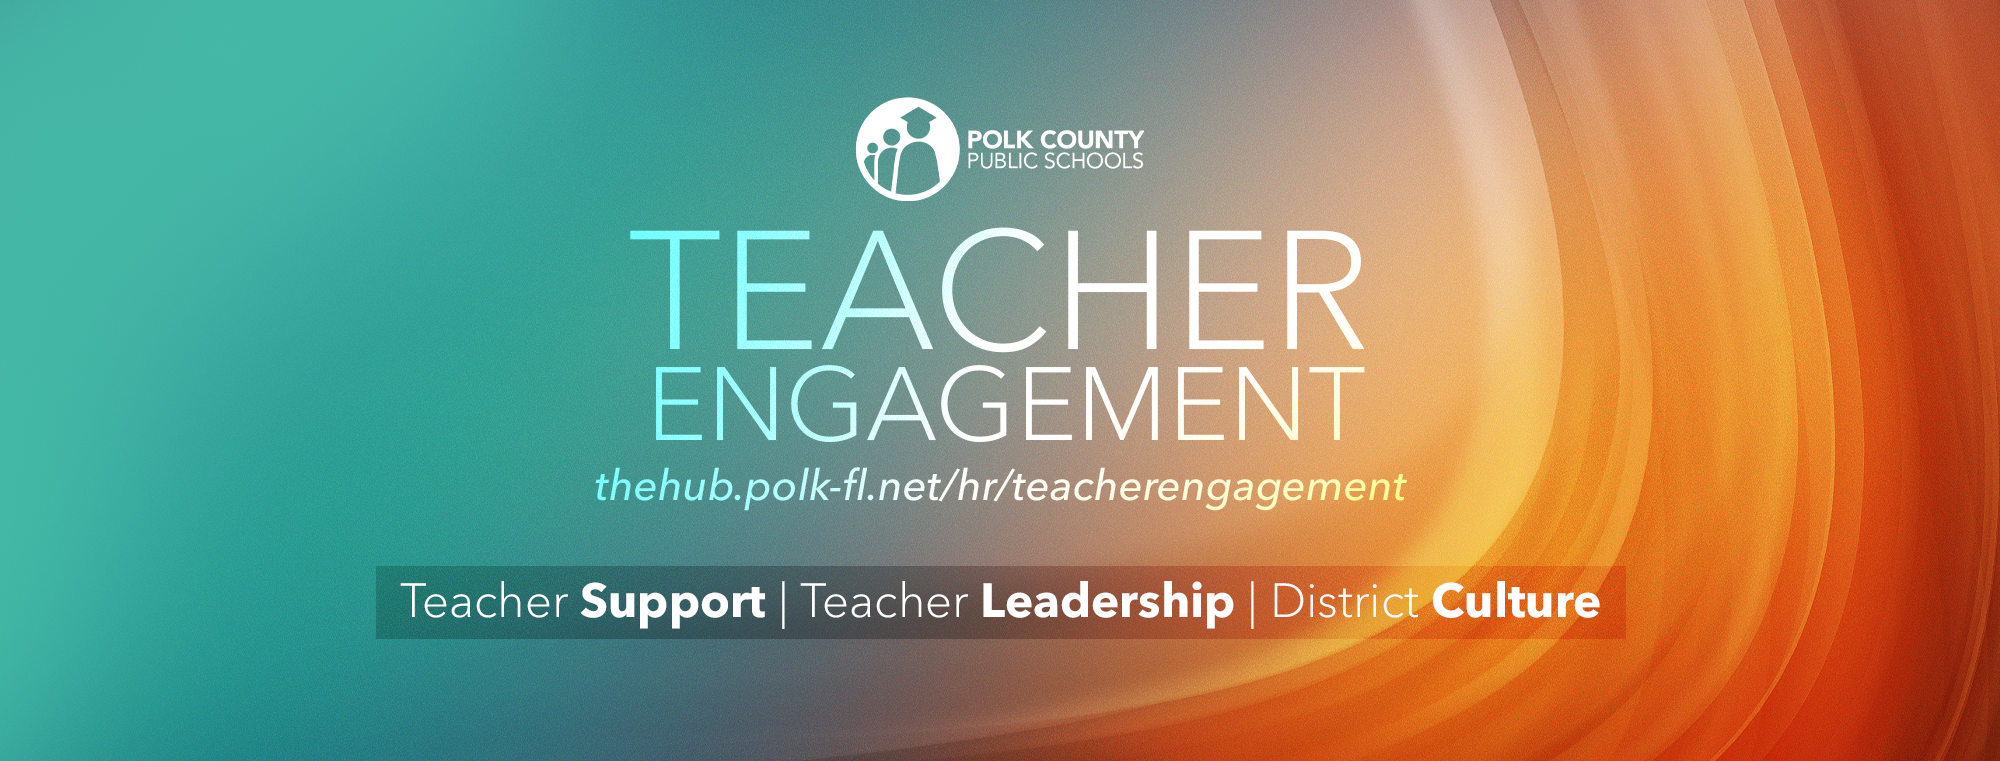 Teacher Engagement Title Banner